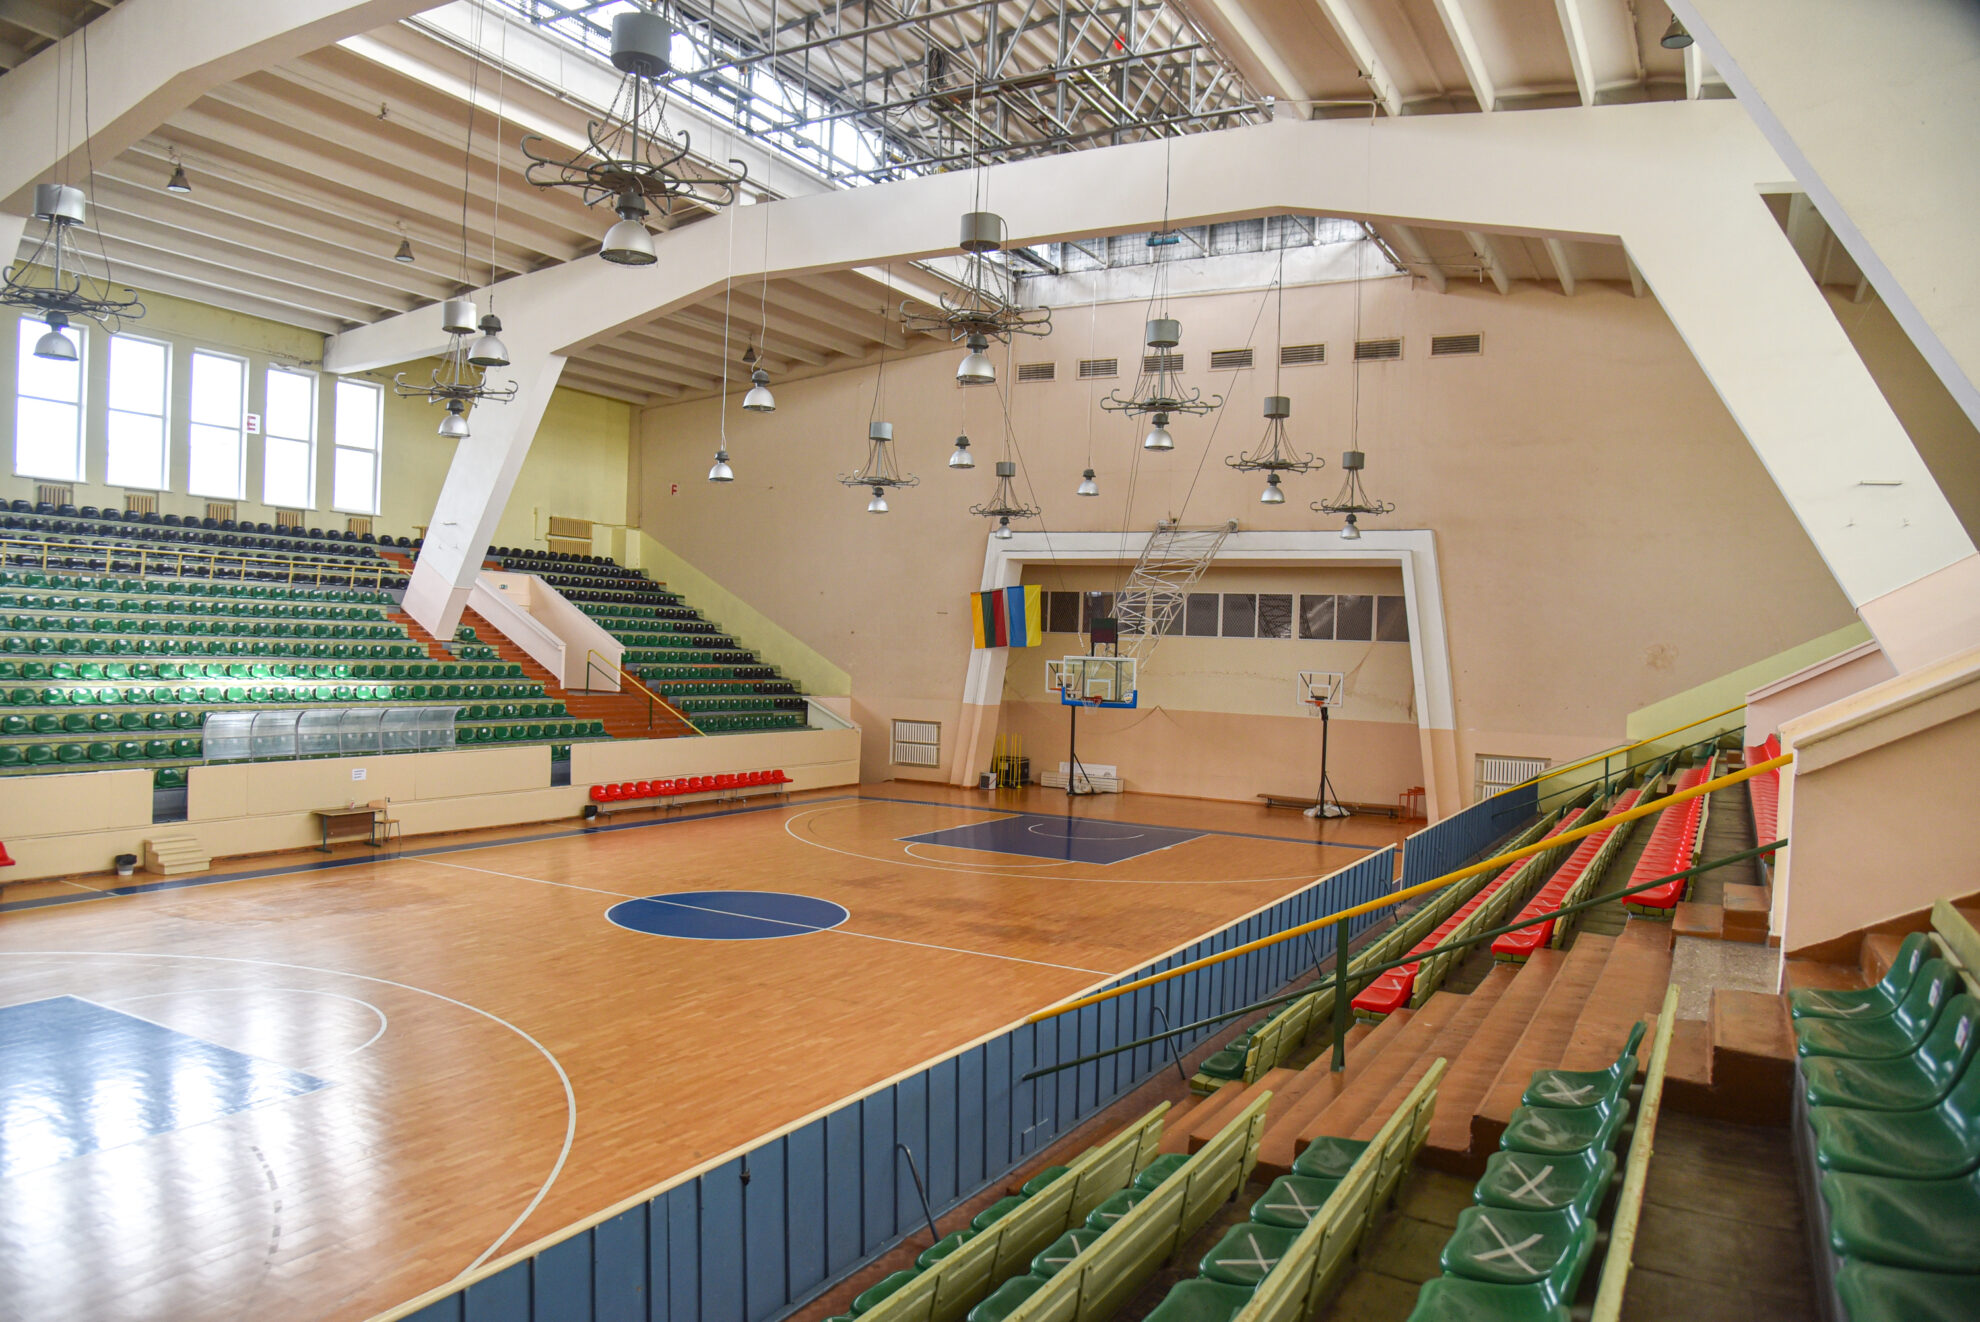 Prieš beveik šešias dešimtis metų statytuose vadinamuosiuose sporto rūmuose bandoma atsikratyti sovietiniu paveldu.